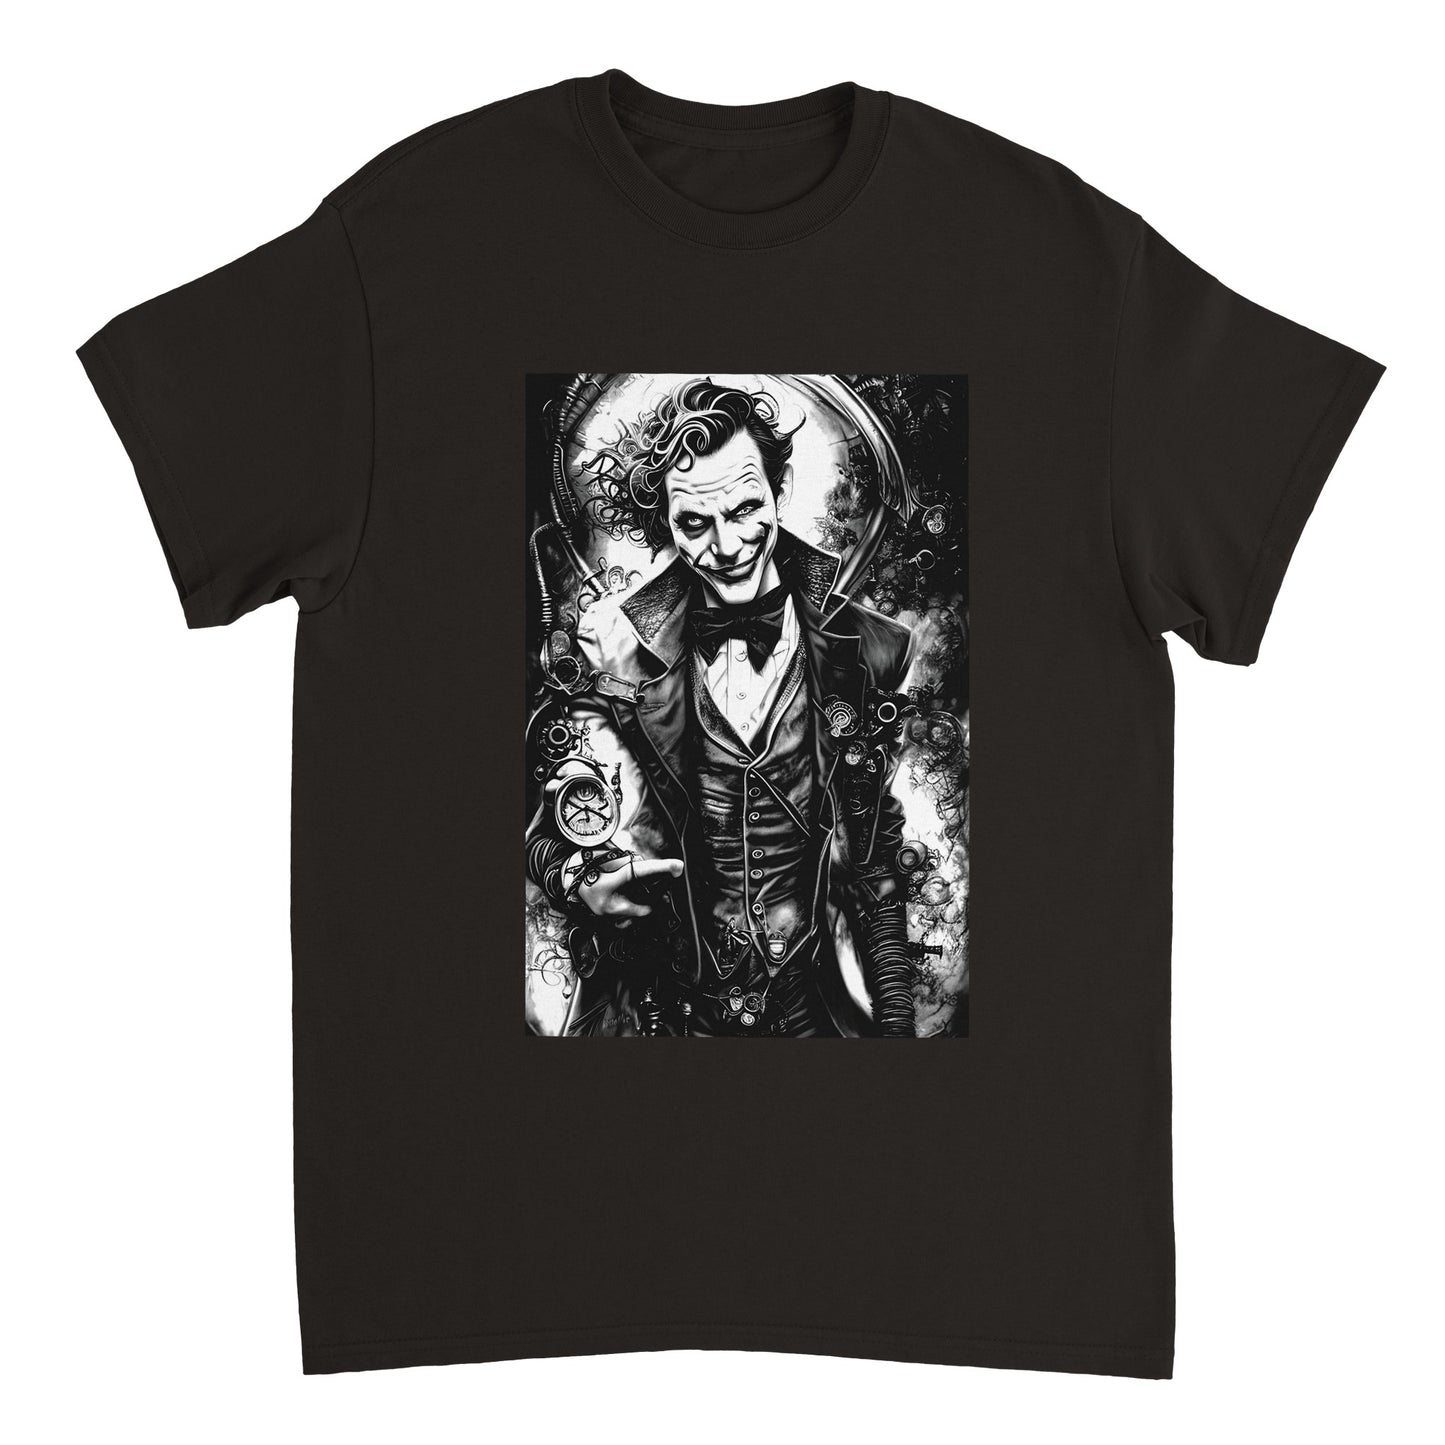 Budget Unisex Crewneck T-shirt/Joker